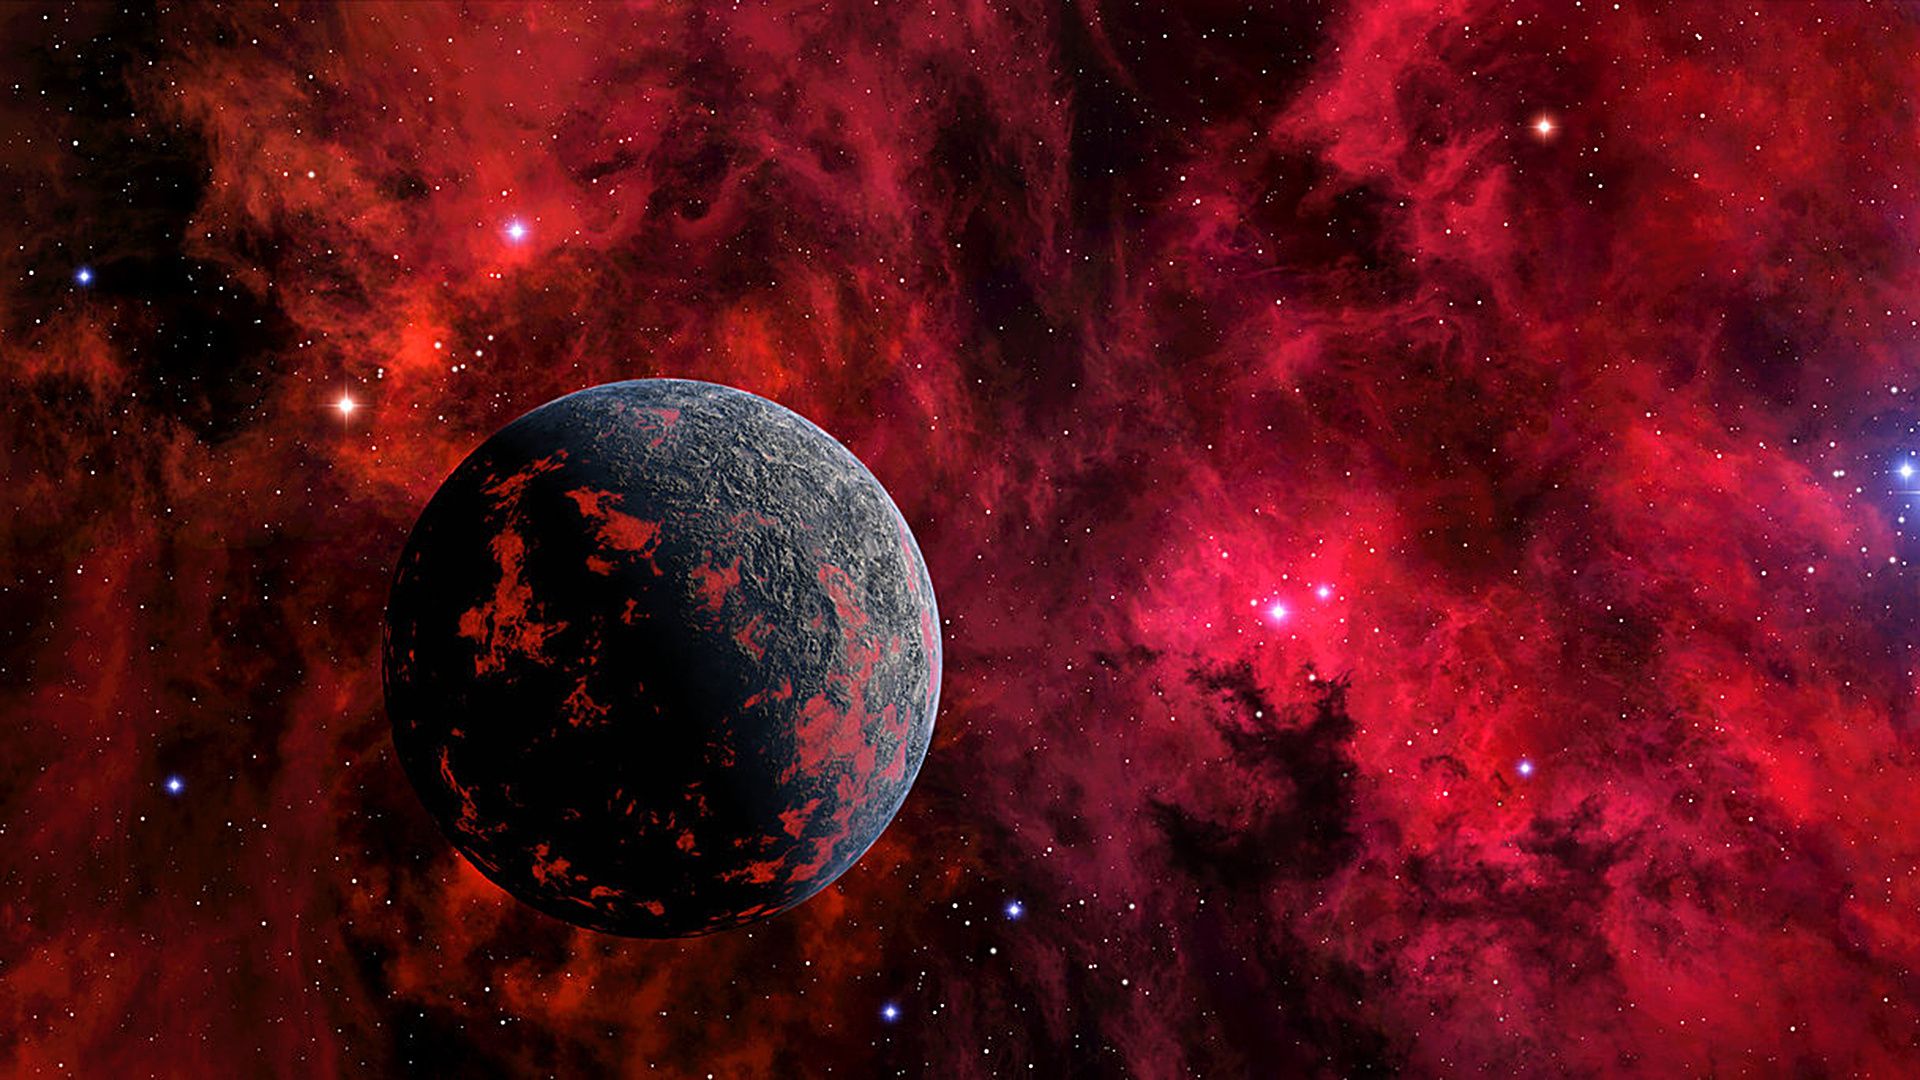 Hình nền vũ trụ đỏ: Chỉ cần với một cái nhìn đầu tiên, bạn sẽ không thể rời mắt khỏi những hình ảnh đẹp lung linh của vũ trụ đỏ rực. Hãy để bức ảnh truyền tải cho bạn sự lớn lao và phong cách độc đáo của nó.